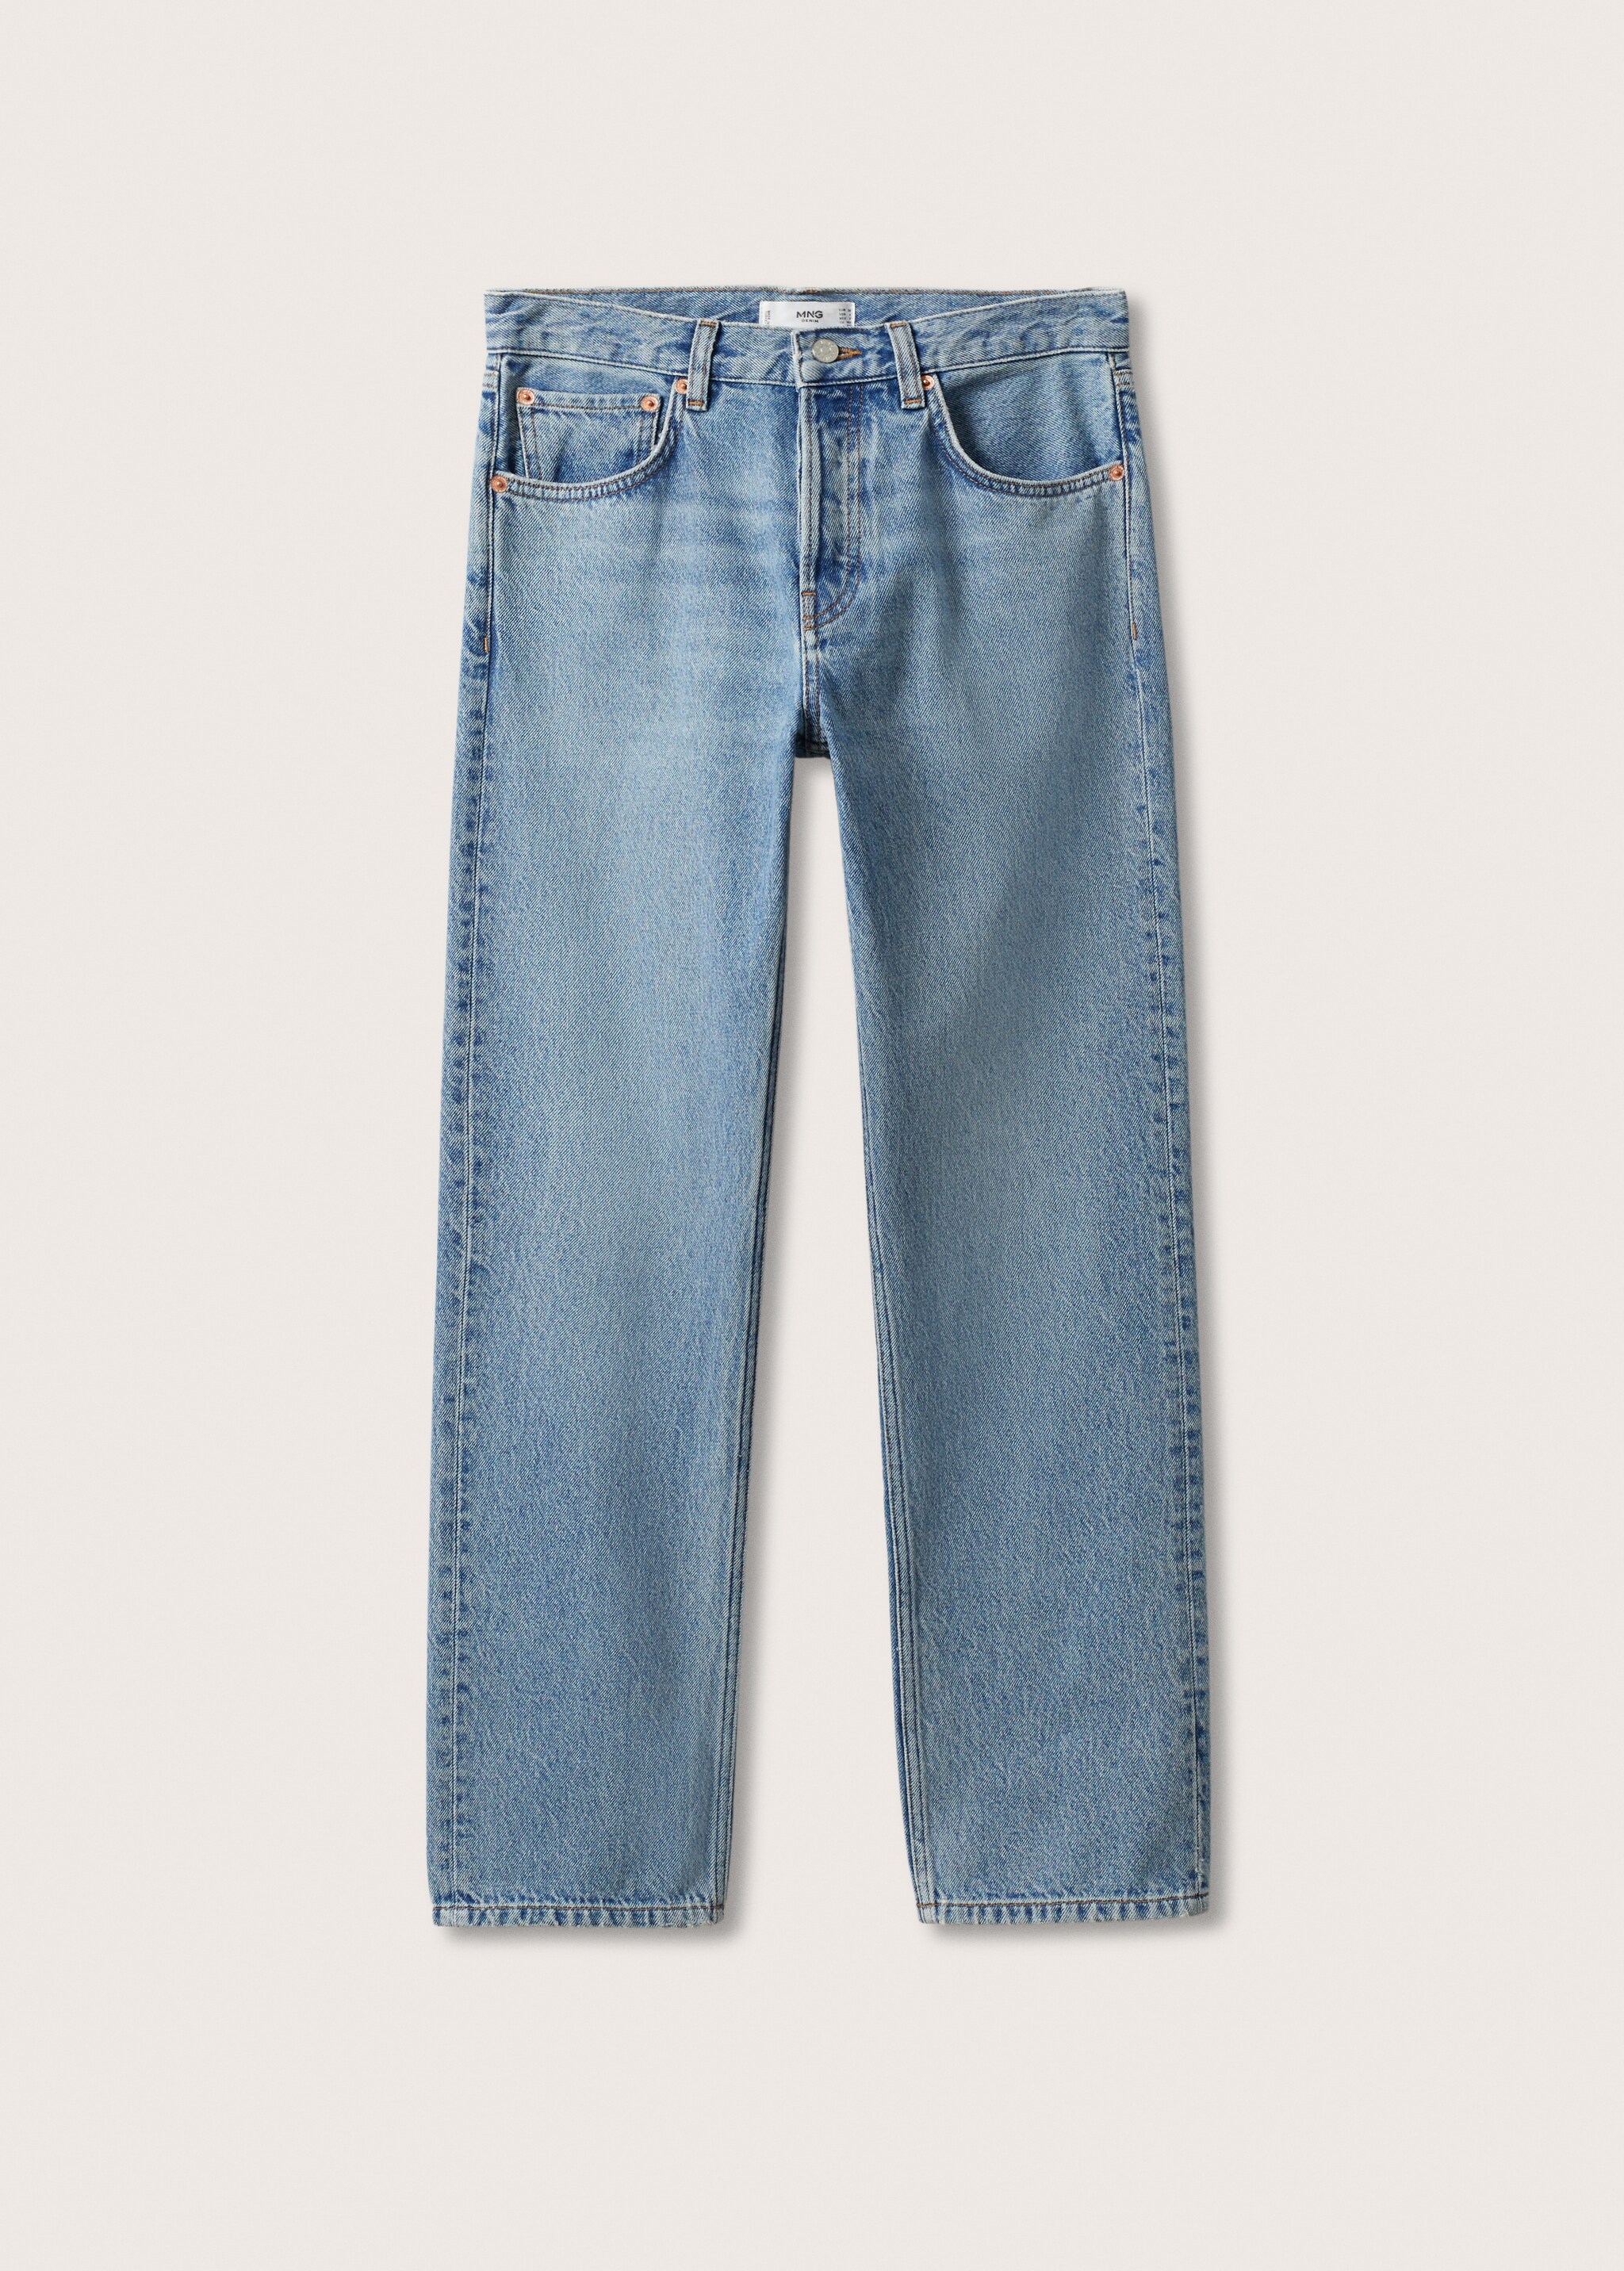 Jeans rectos tiro bajo - Artículo sin modelo